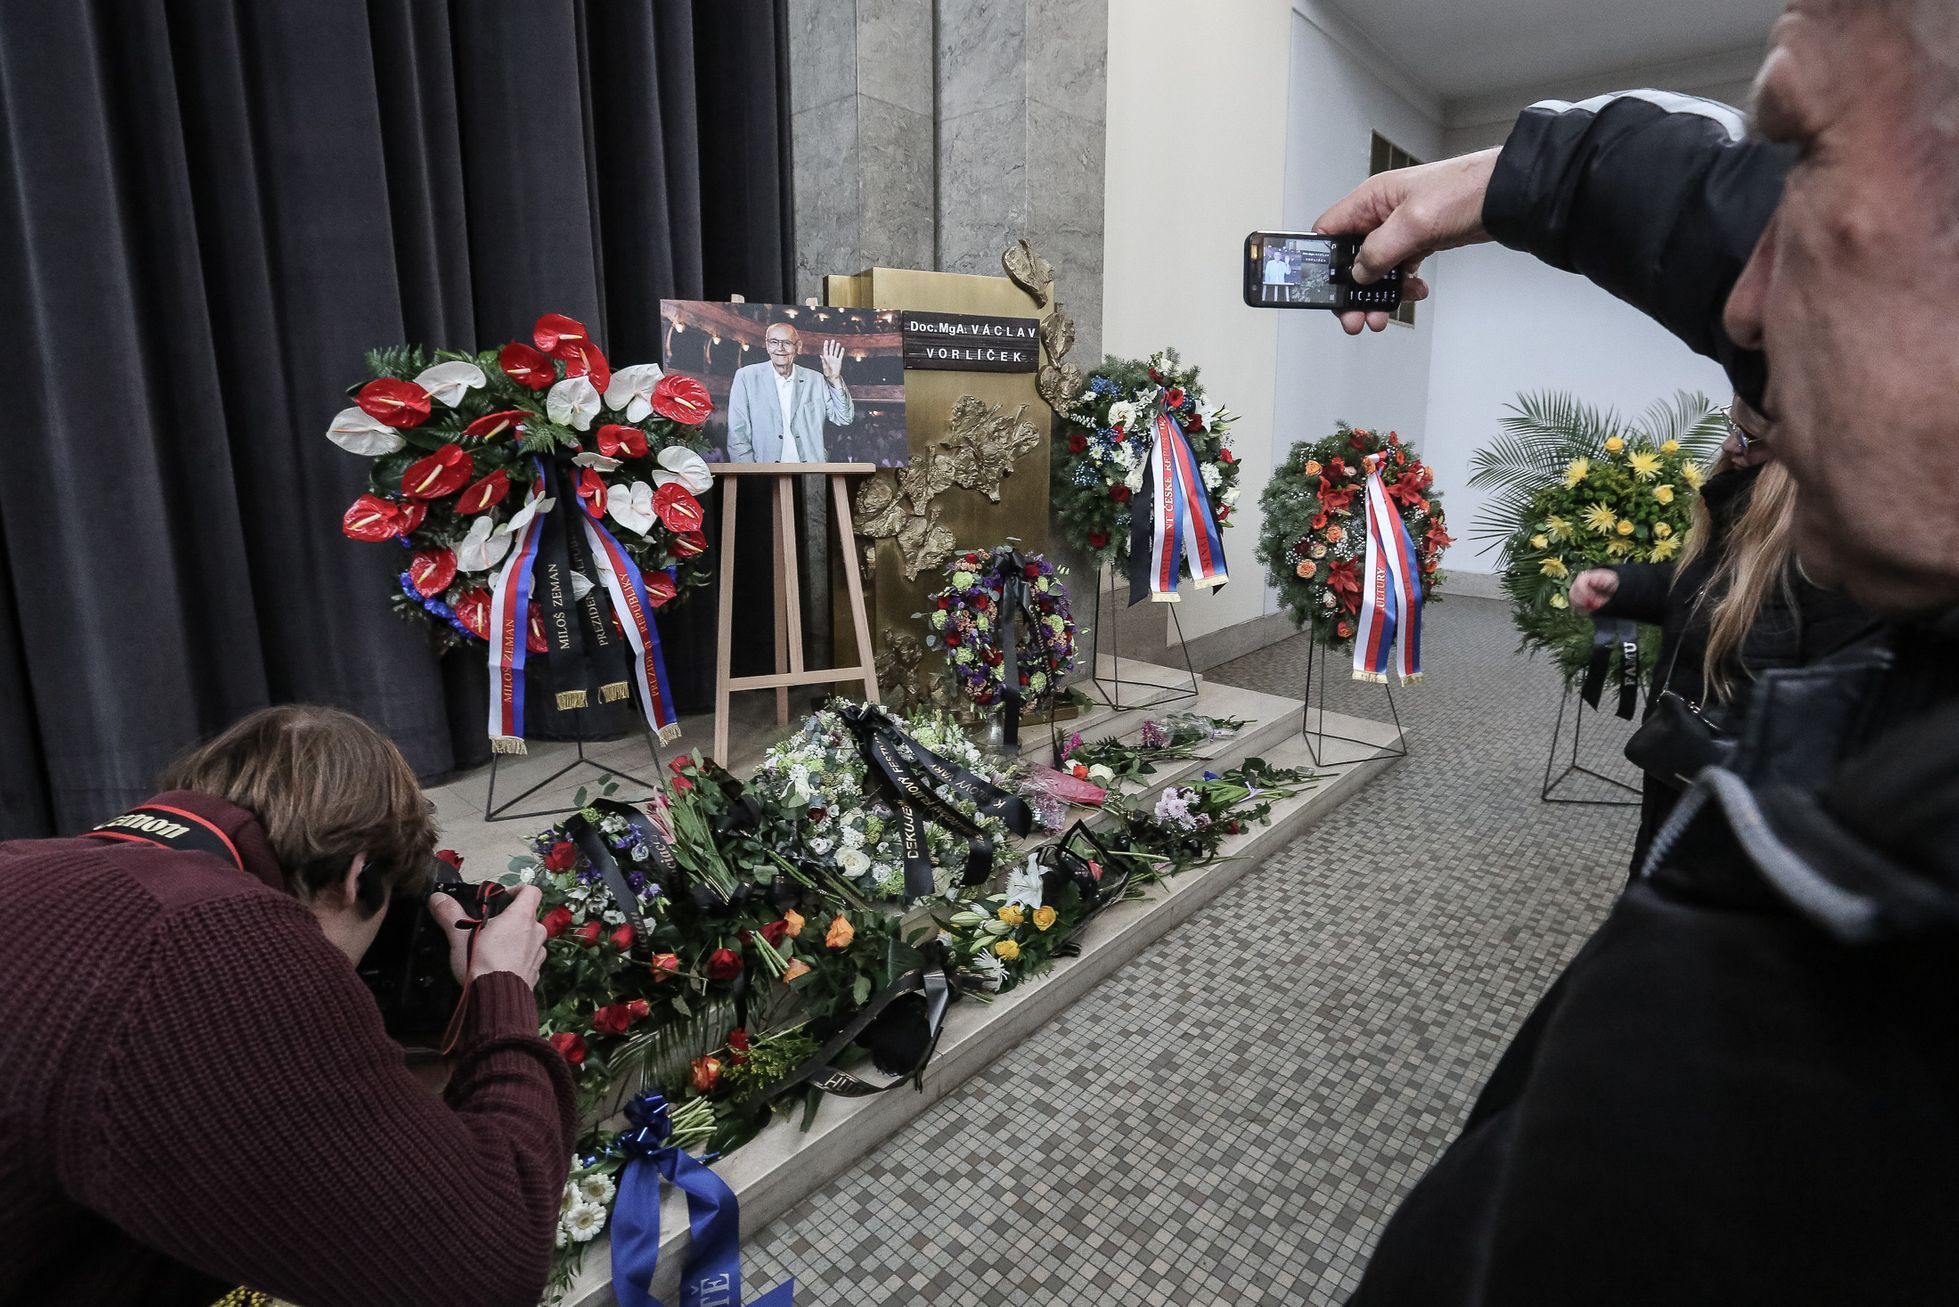 Pohřeb režiséra Václava Vorlíčka, krematorium Strašnice, Praha, 12. 2. 2019